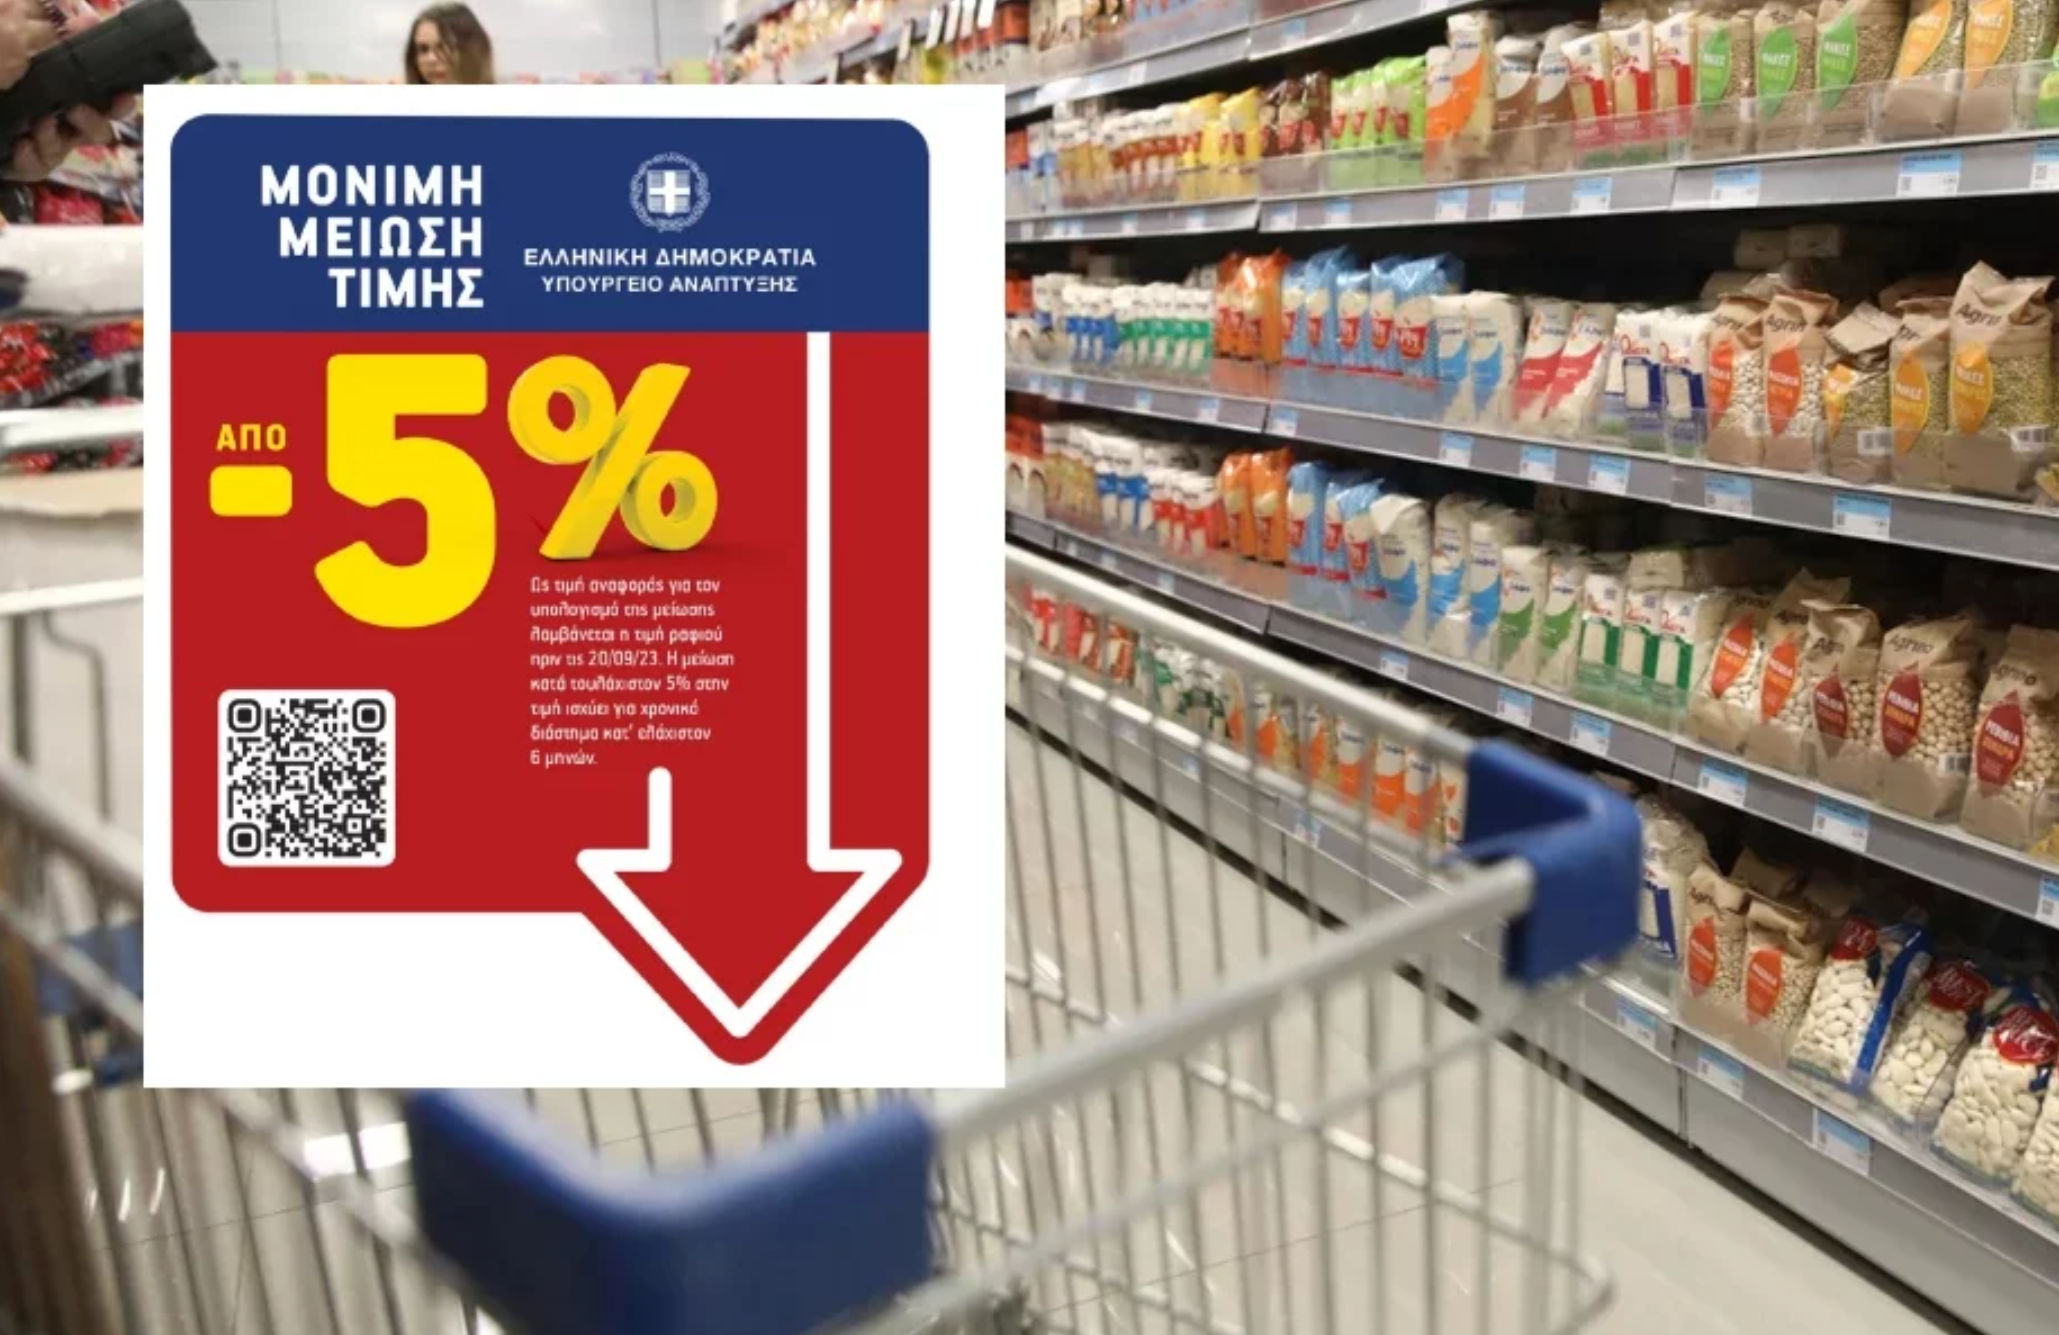 Από σήμερα στα ράφια των σούπερ μάρκετ η ειδική σήμανση για όσα προϊόντα έχουν έκπτωση 5%